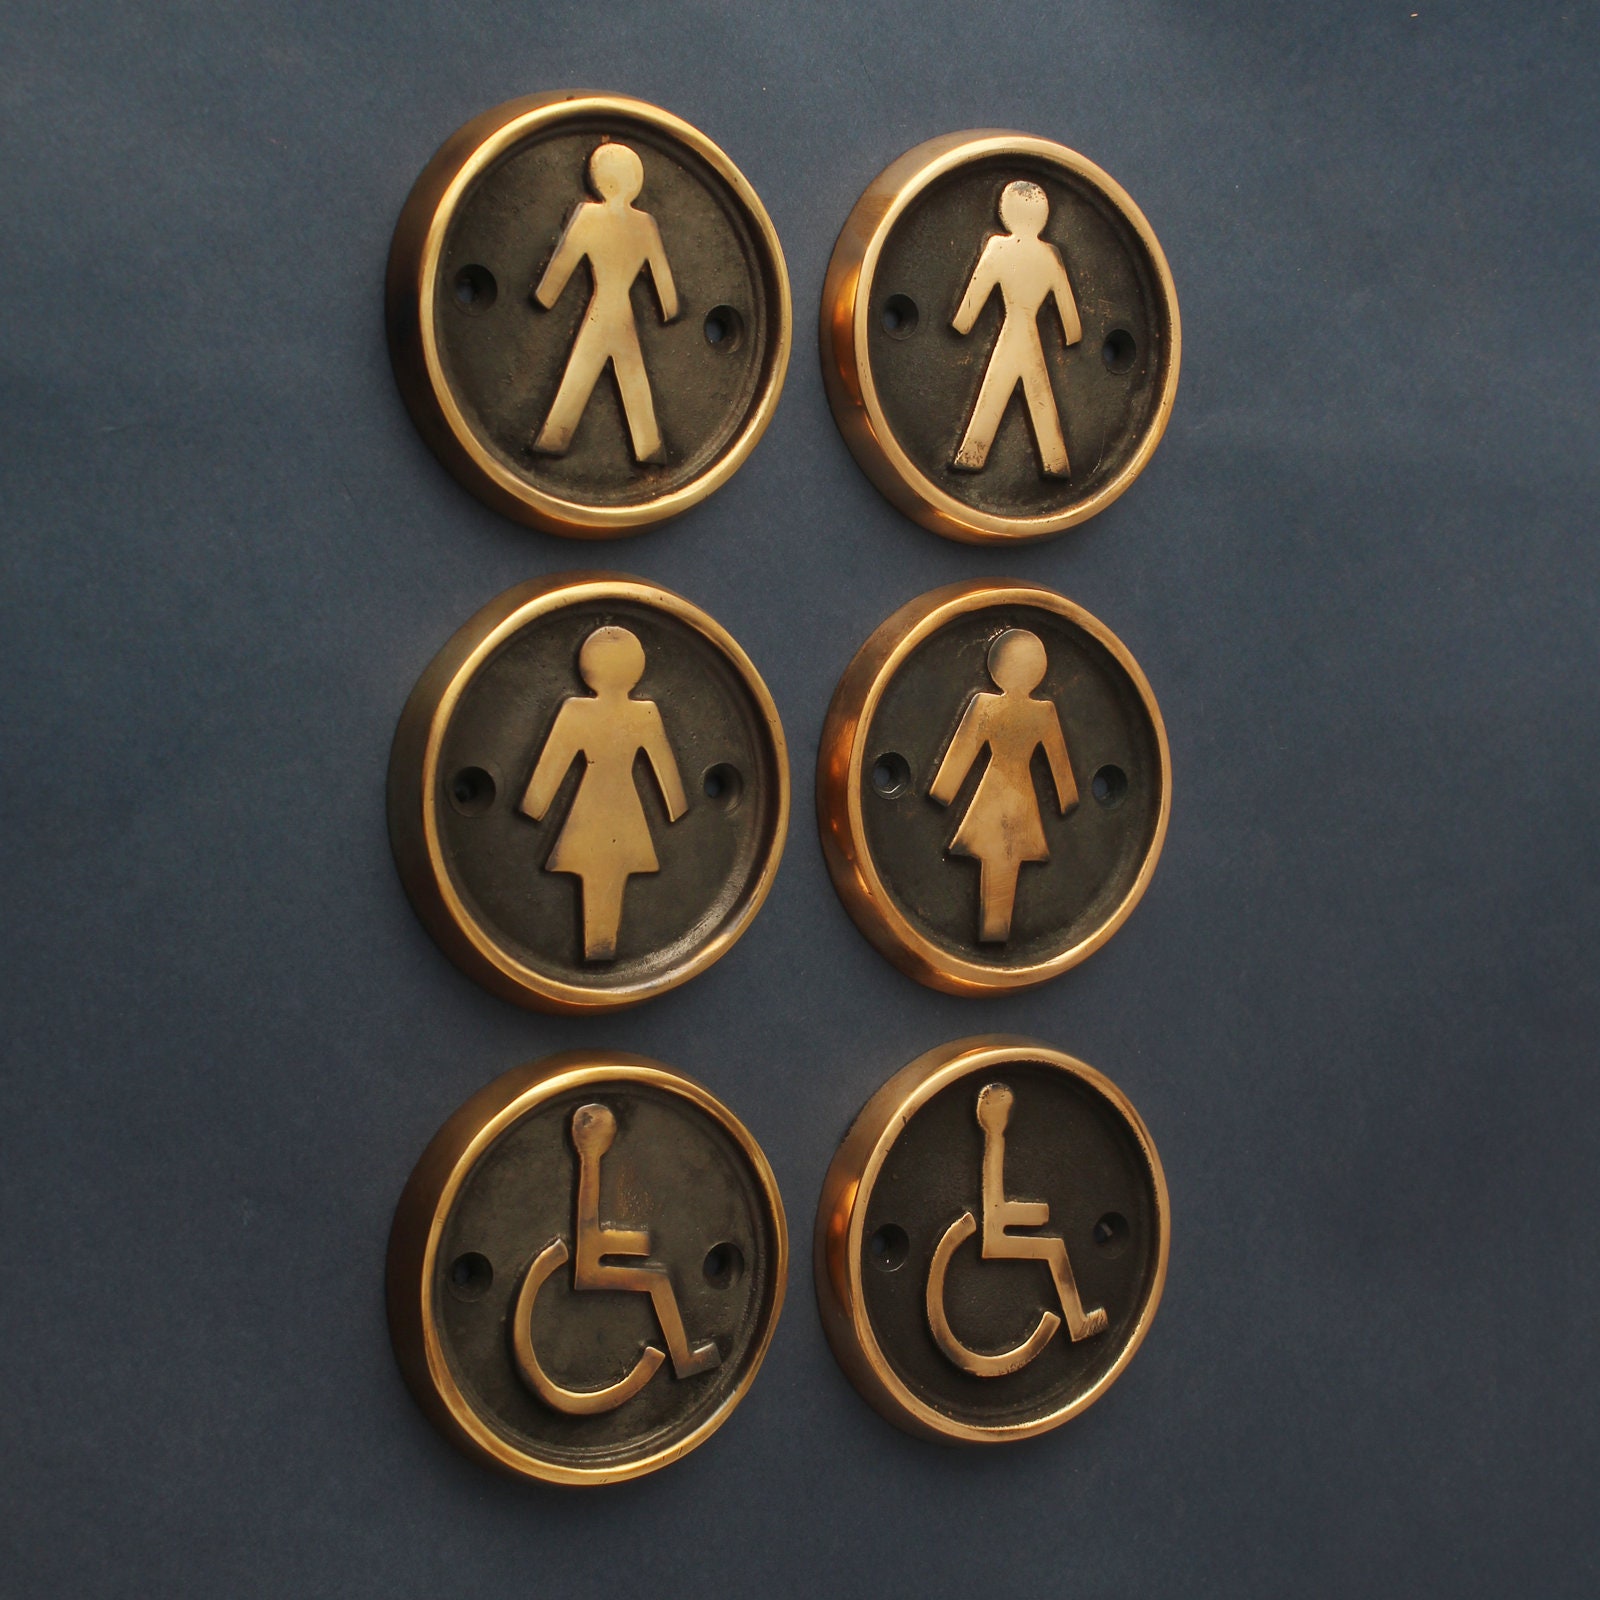 Handicap Antiqued Brass Bathroom Sign